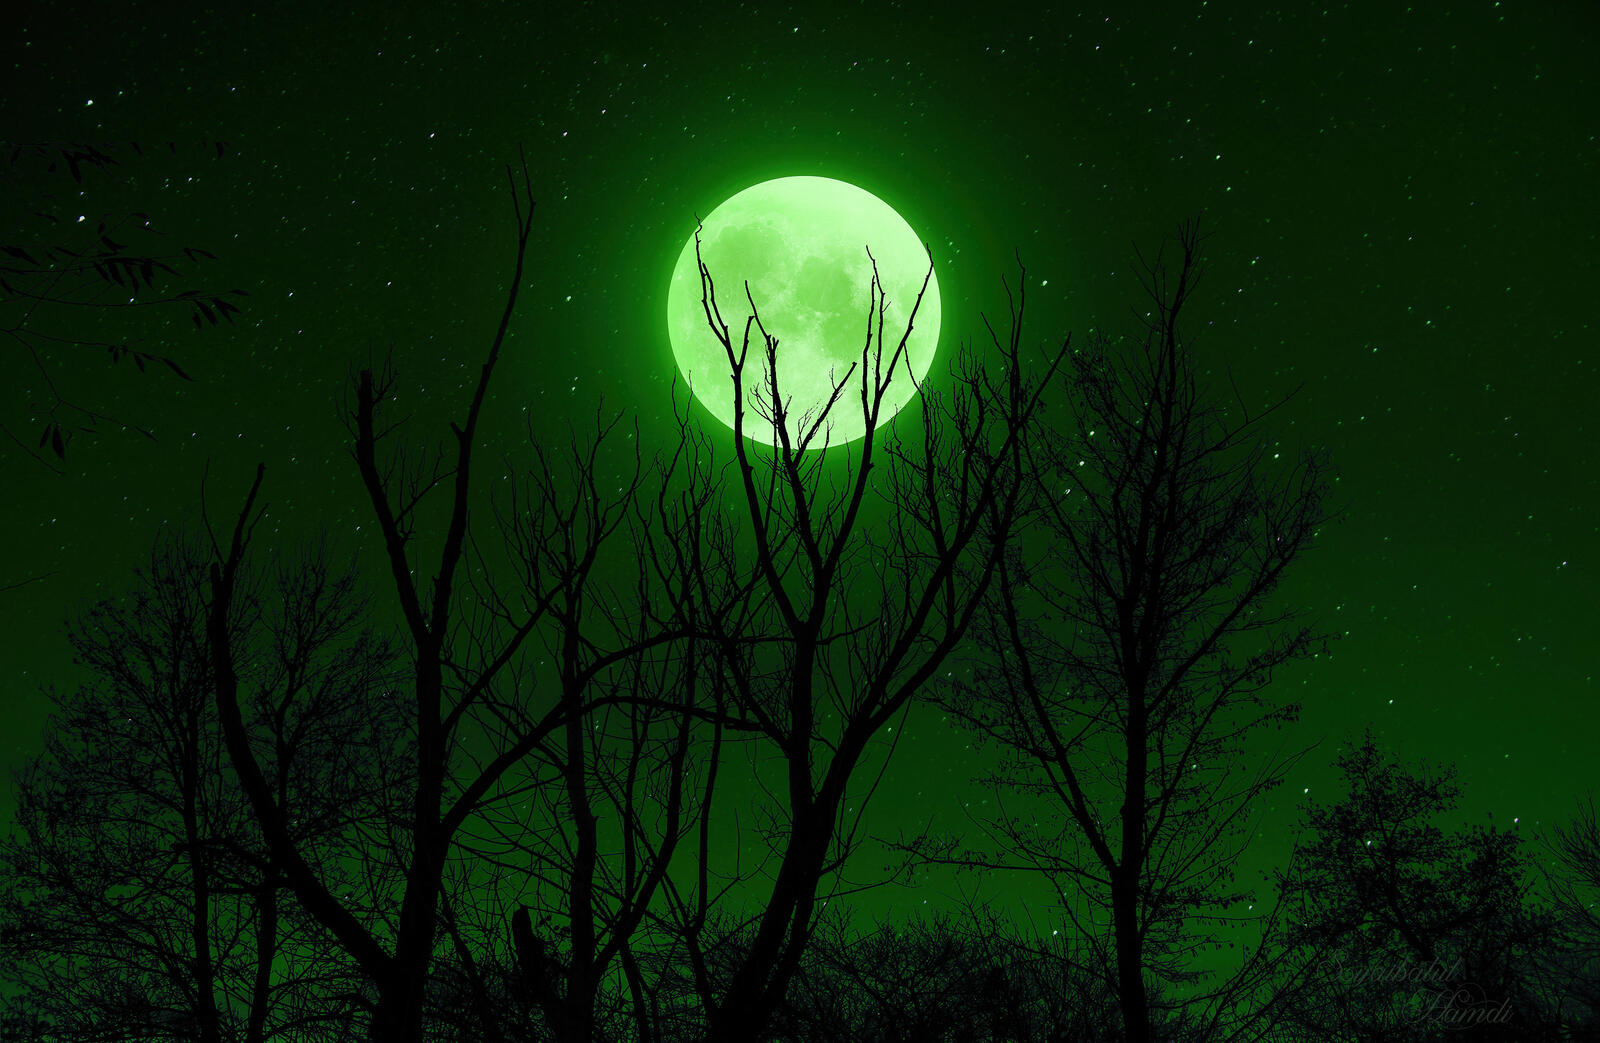 Бесплатное фото Зеленая луна под стволами деревьев